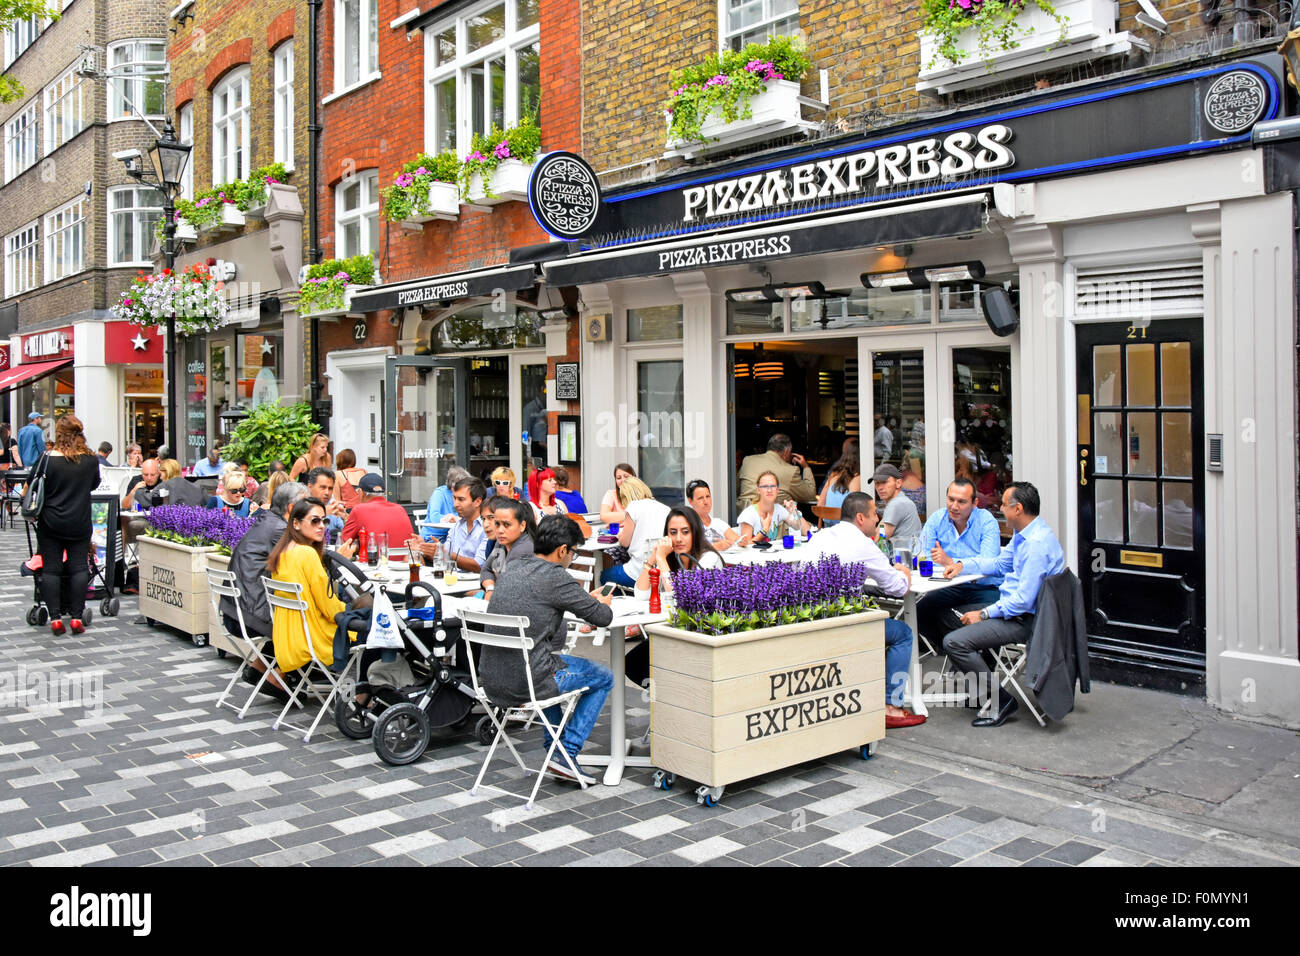 Pizza Express Pizza Restaurant avec les gens manger dehors à l'extérieur Manger à St Christophers Place dîner à côté d'Oxford Street West End de Londres UK Banque D'Images